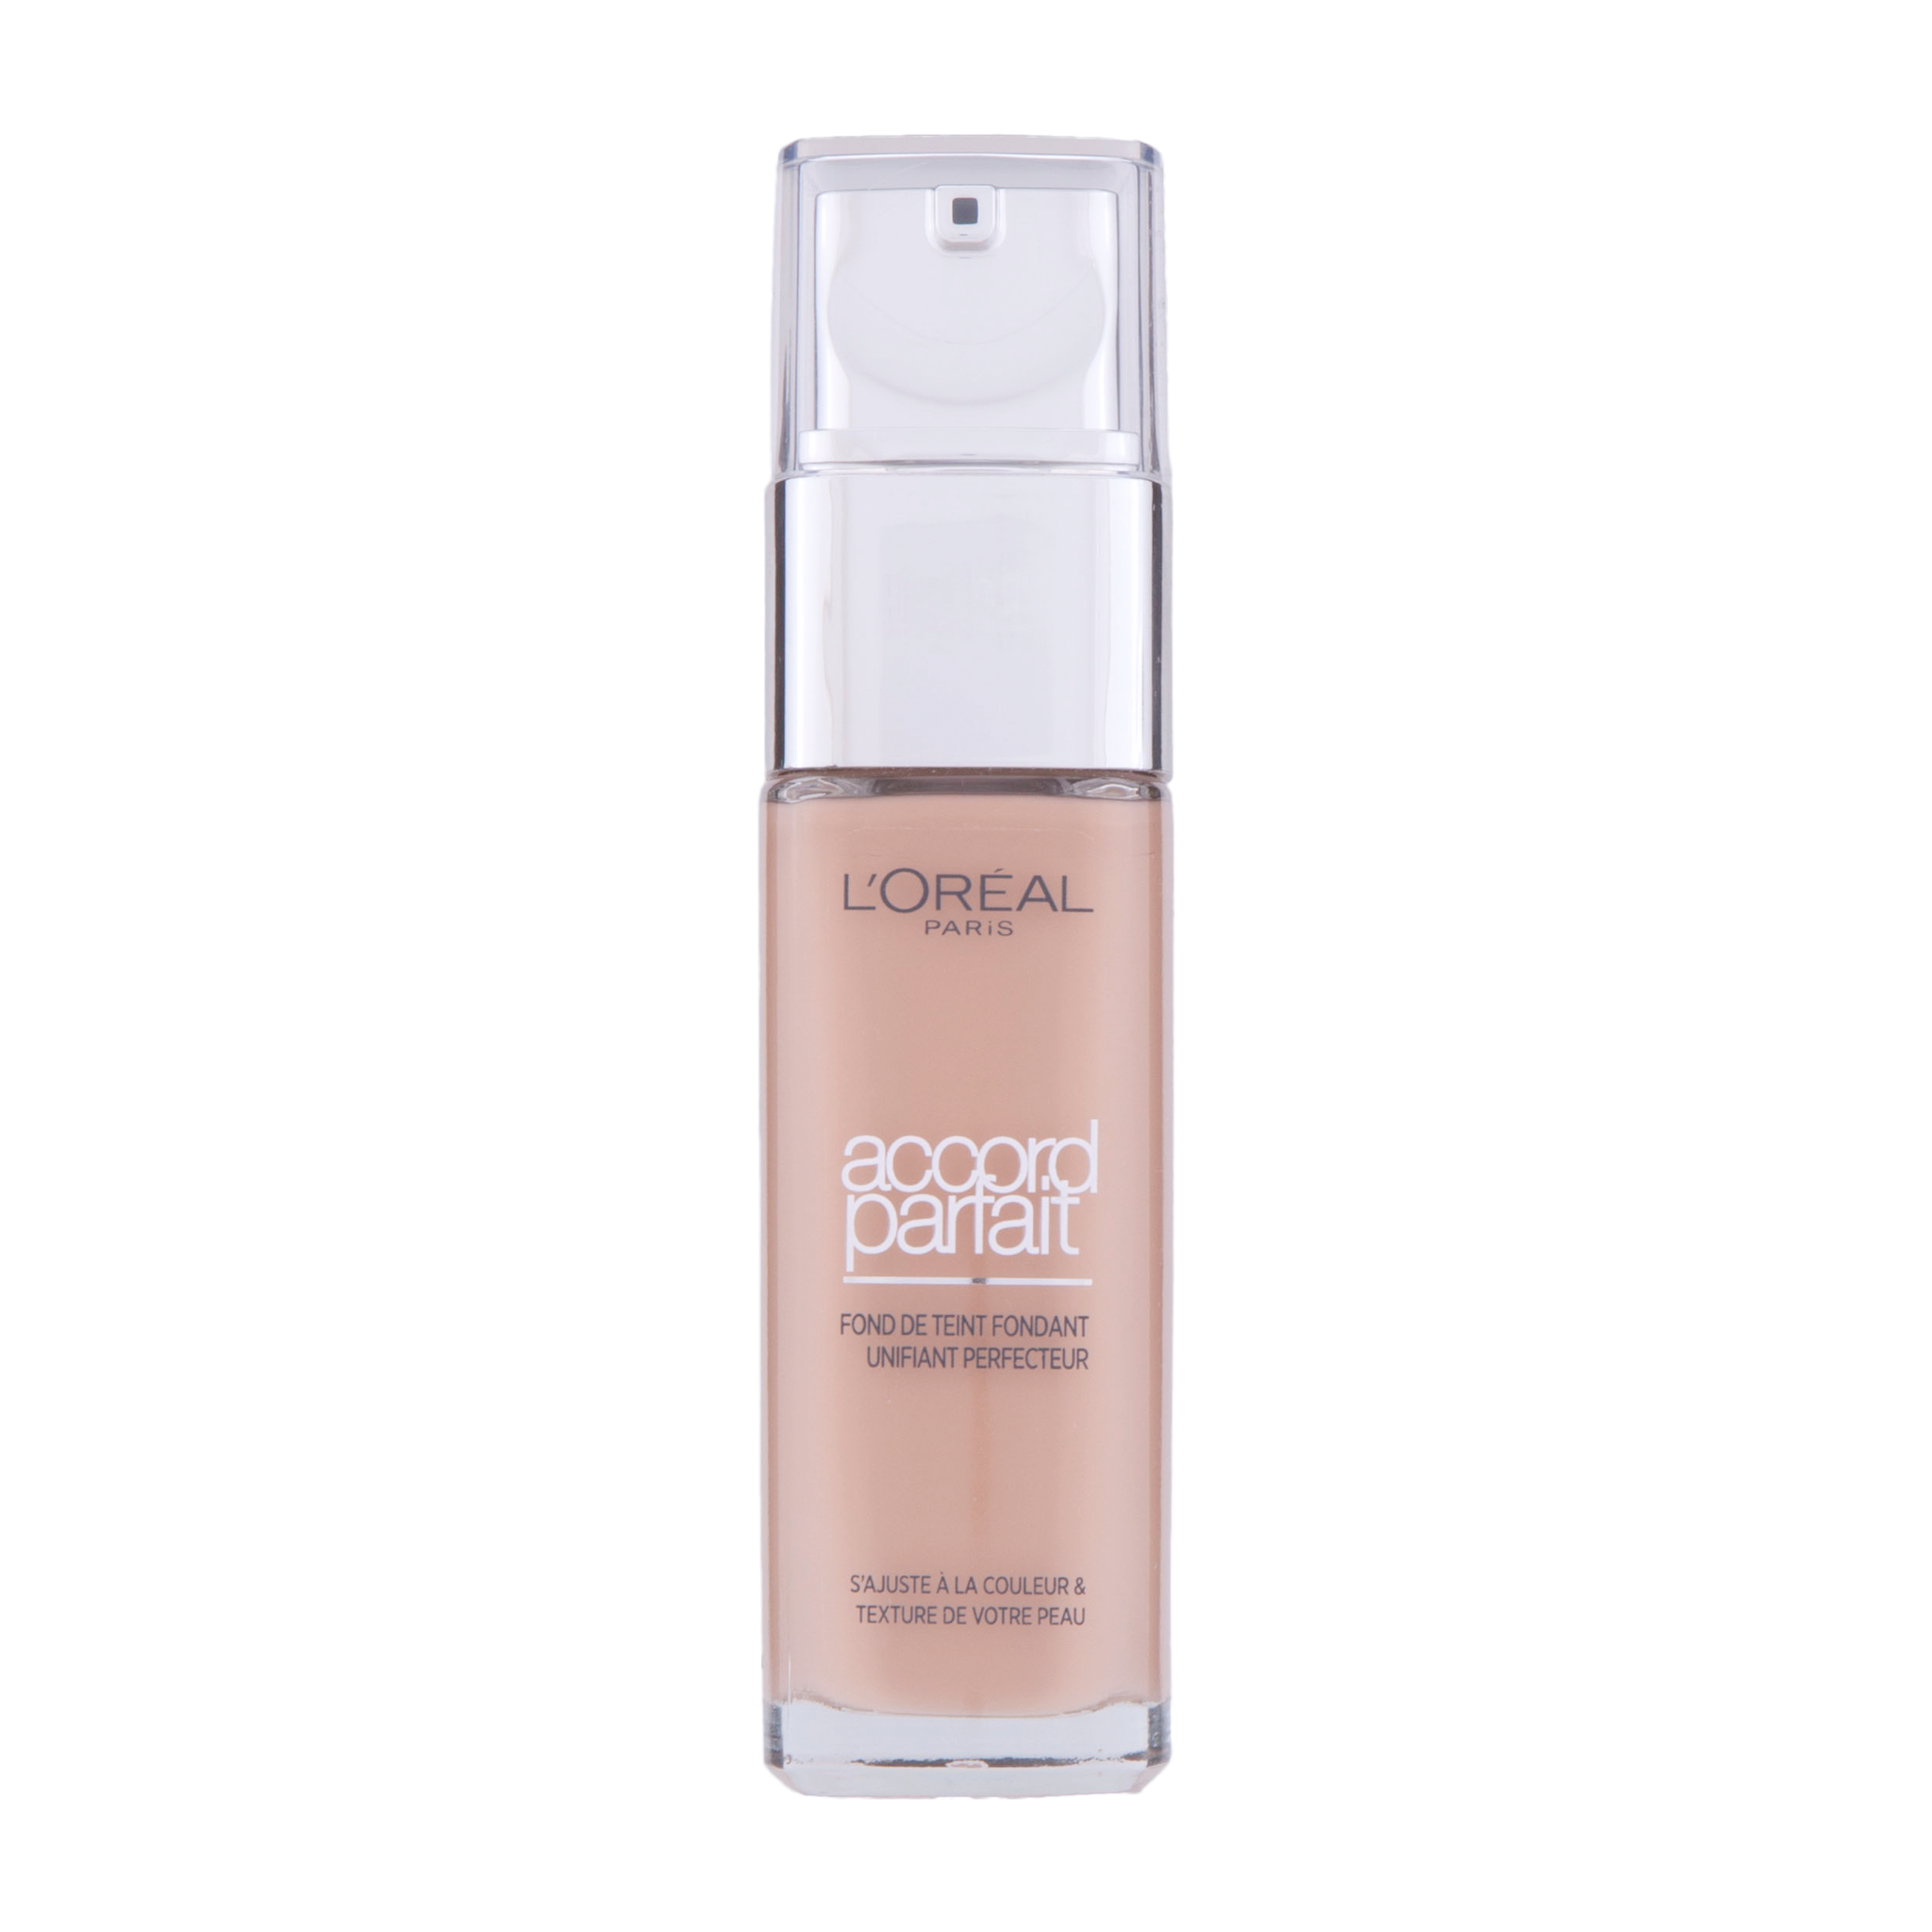 L'Oréal Make-Up Designer Accord Parfait - 5.D/5.W Golden Sand - Foundation